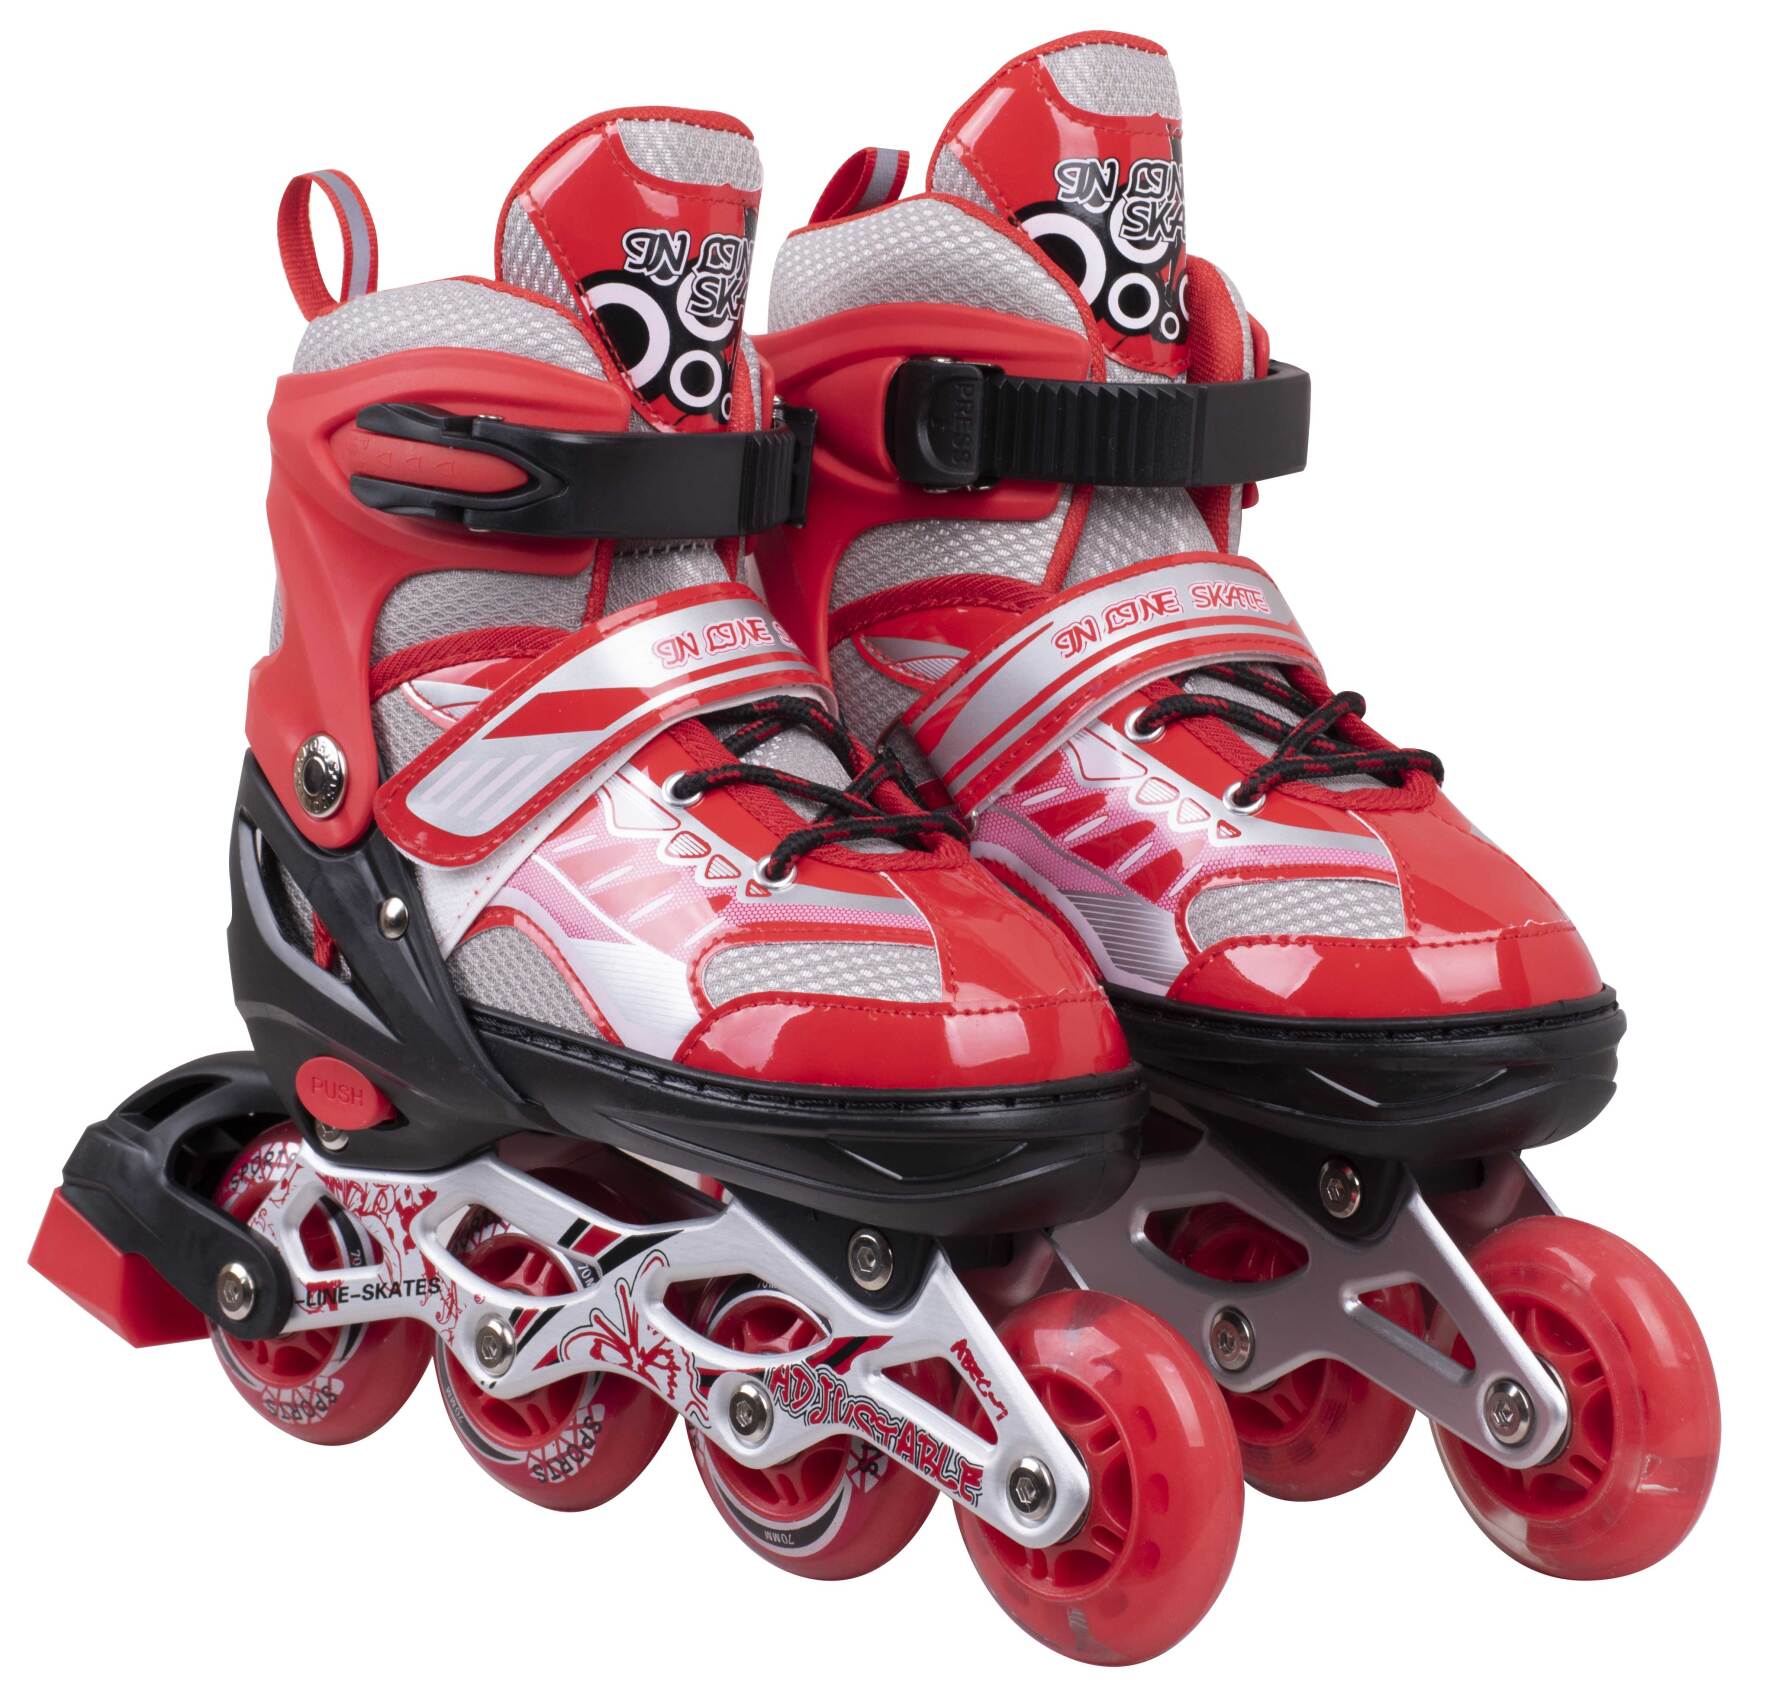  کفش اسکیت چهار چرخ لبفا قرمز تمام ژل از نمای رو به رو مناسب ورزش و تفریح 